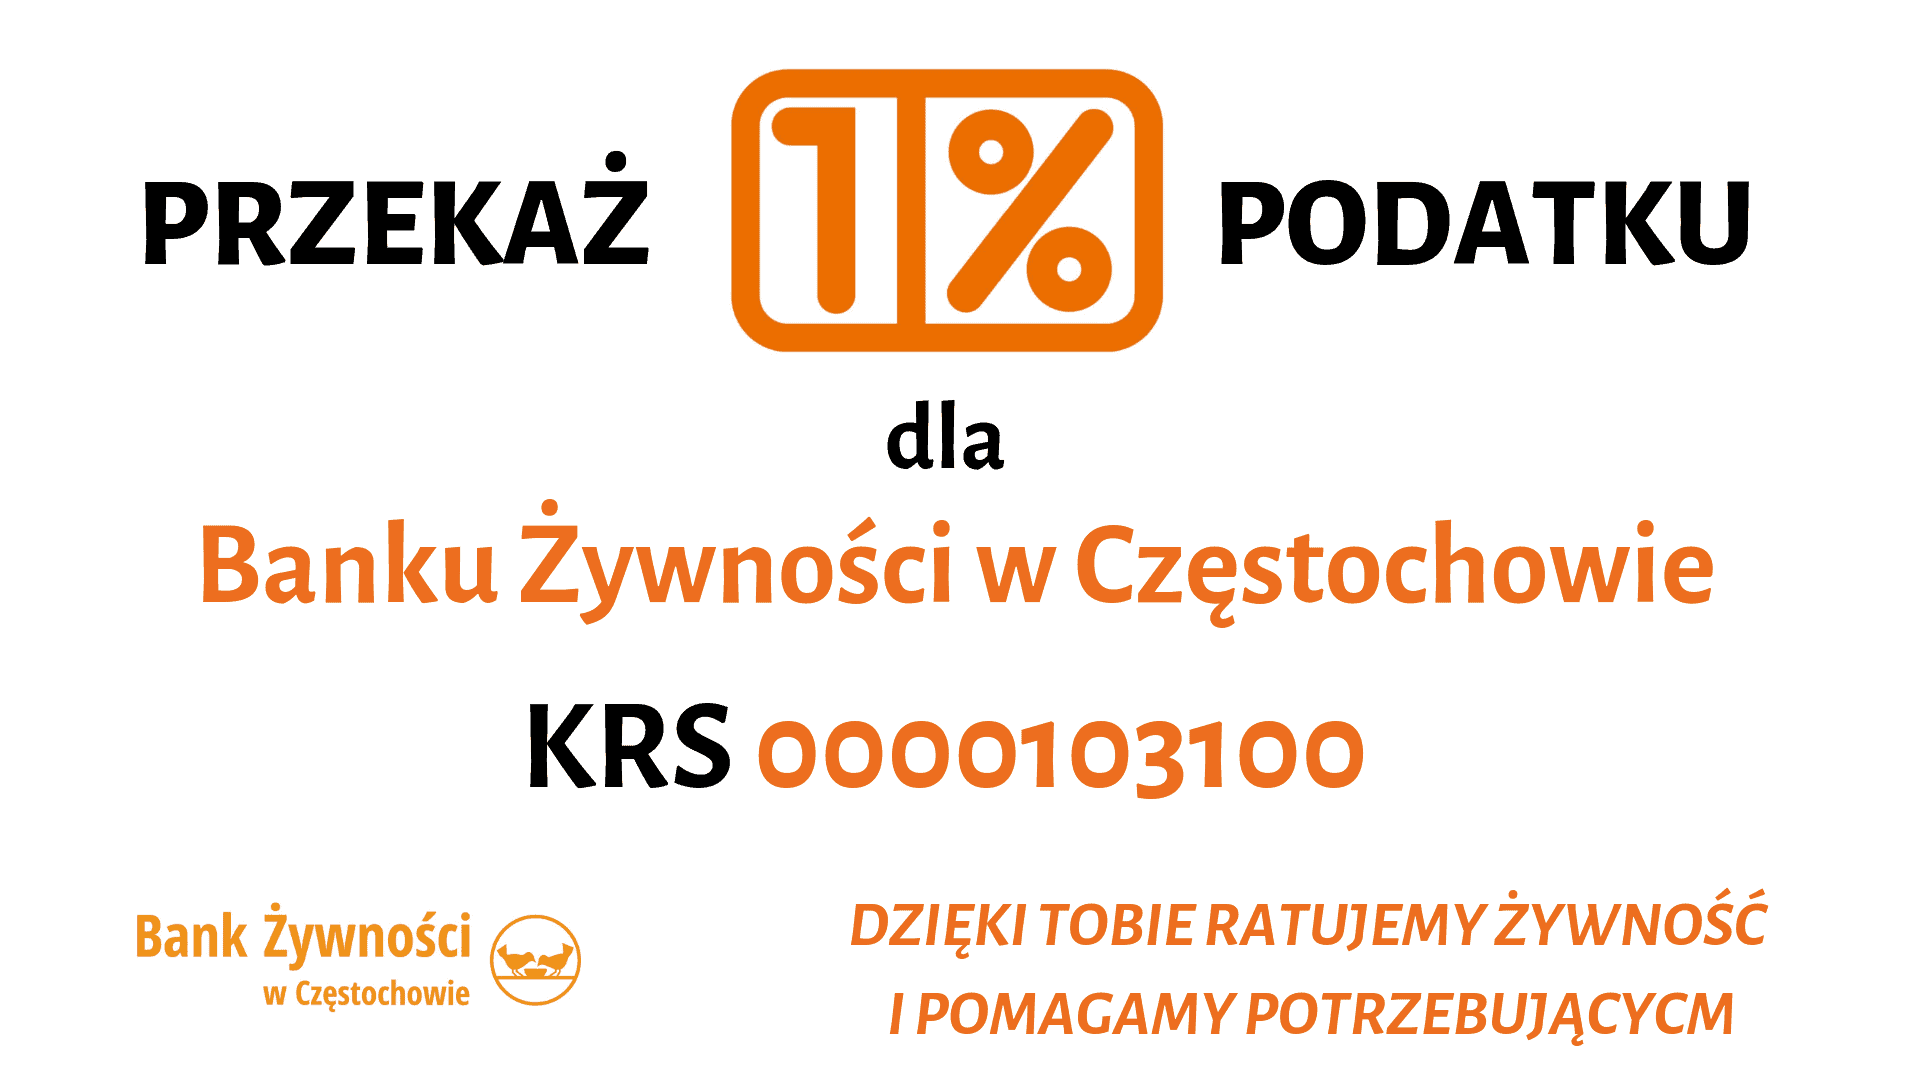 You are currently viewing PRZEKAŻ 1% PODATKU BANKOWI ŻYWNOŚCI W CZĘSTOCHOWIE